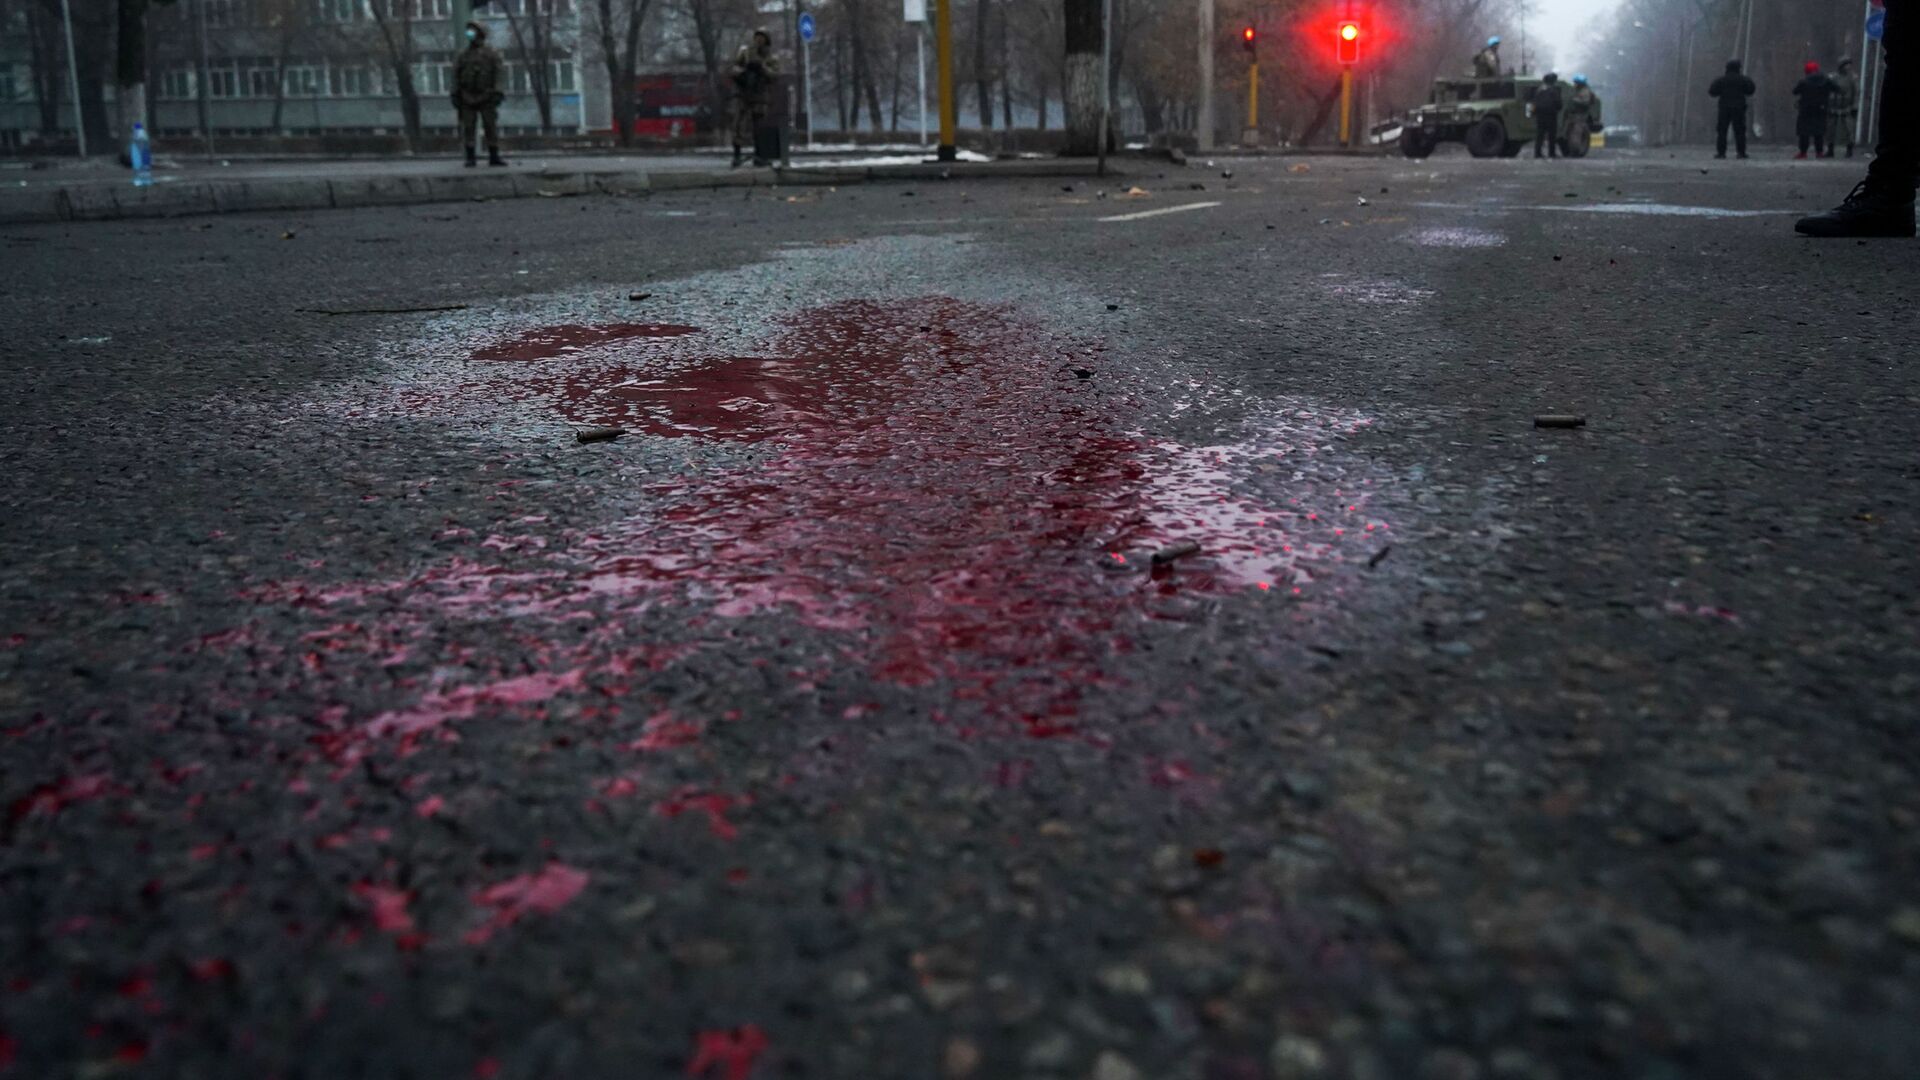 Кровь видна на дороге, когда казахстанские солдаты патрулируют улицу после столкновений в Алматы, Казахстан, четверг, 6 января 2022 г.  - Sputnik Казахстан, 1920, 20.01.2022